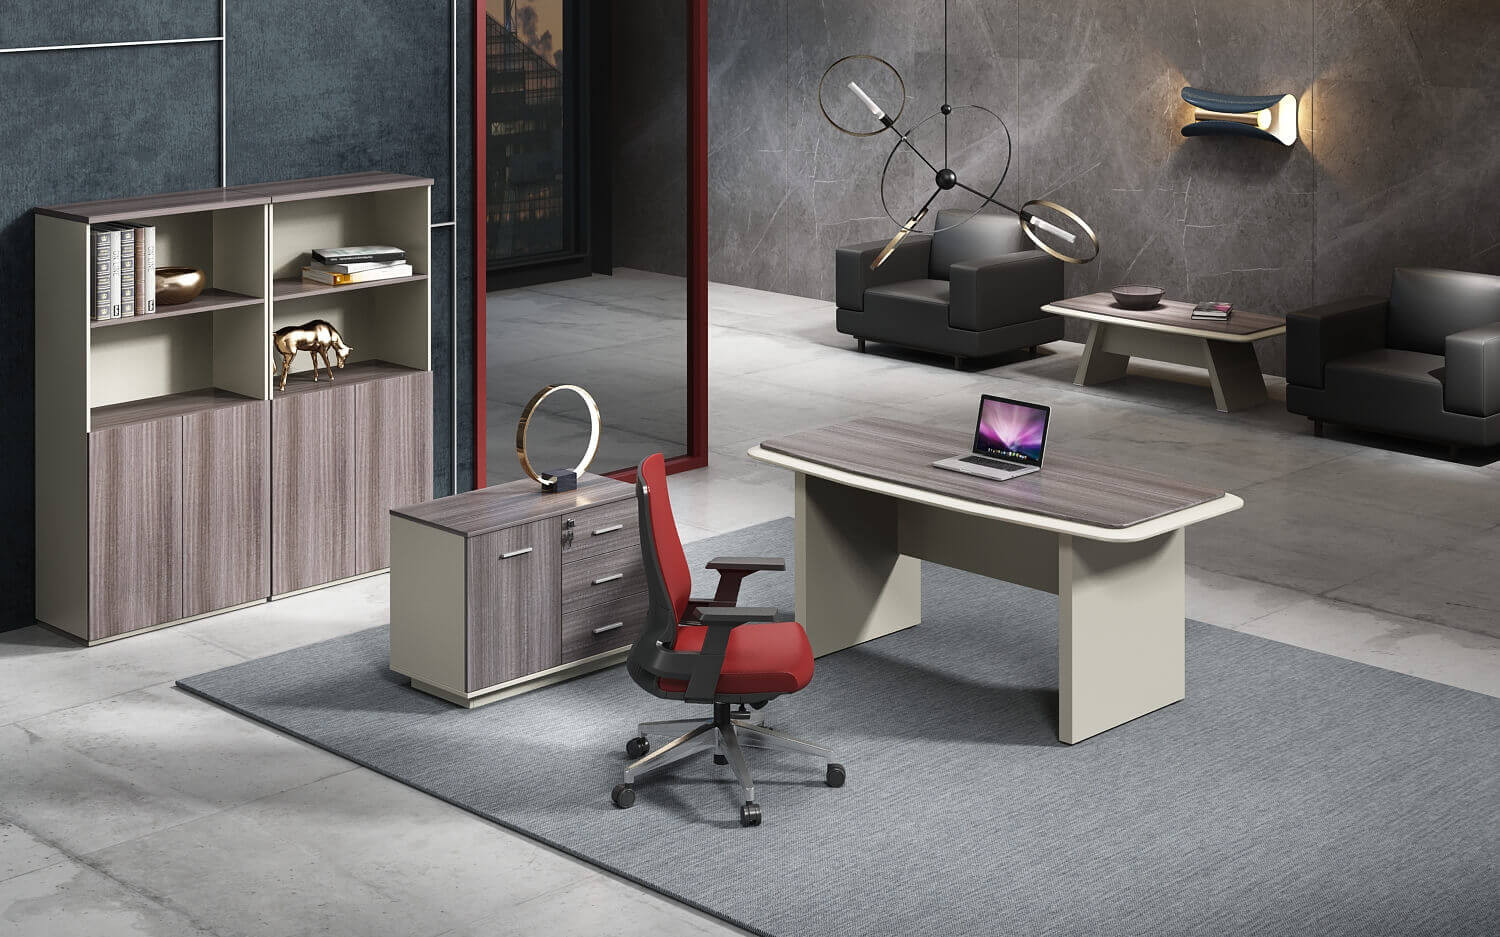 Качество, стиль и функциональность – основные критерии выбора мебели для современного офиса любой компании.